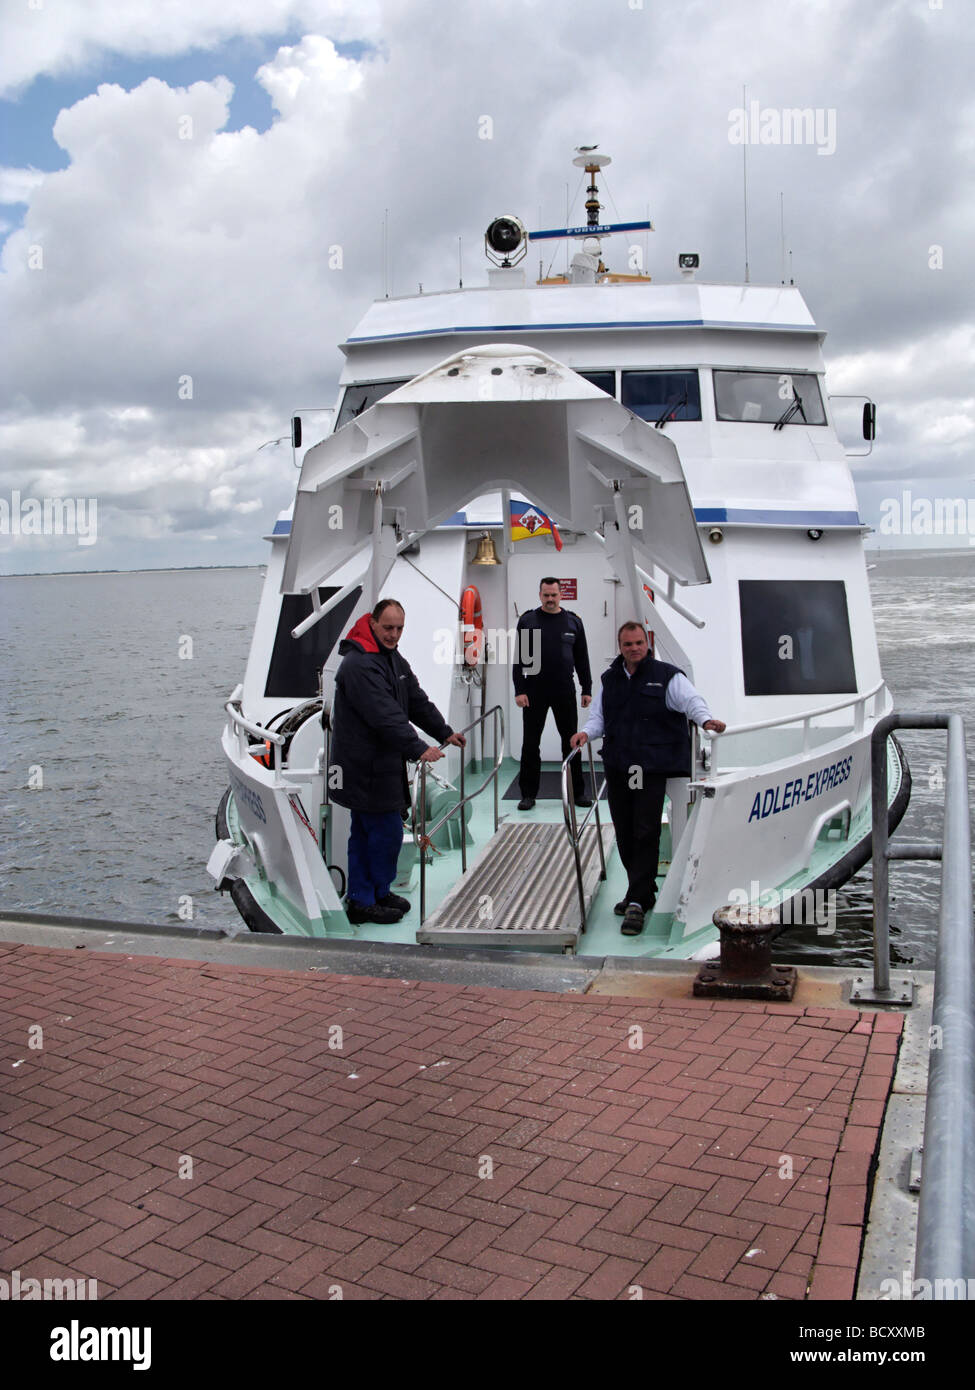 Los miembros de la tripulación en el ferry expreso Adler esperando para embarcar pasajeros de Frisia septentrional isla Amrum Alemania Foto de stock